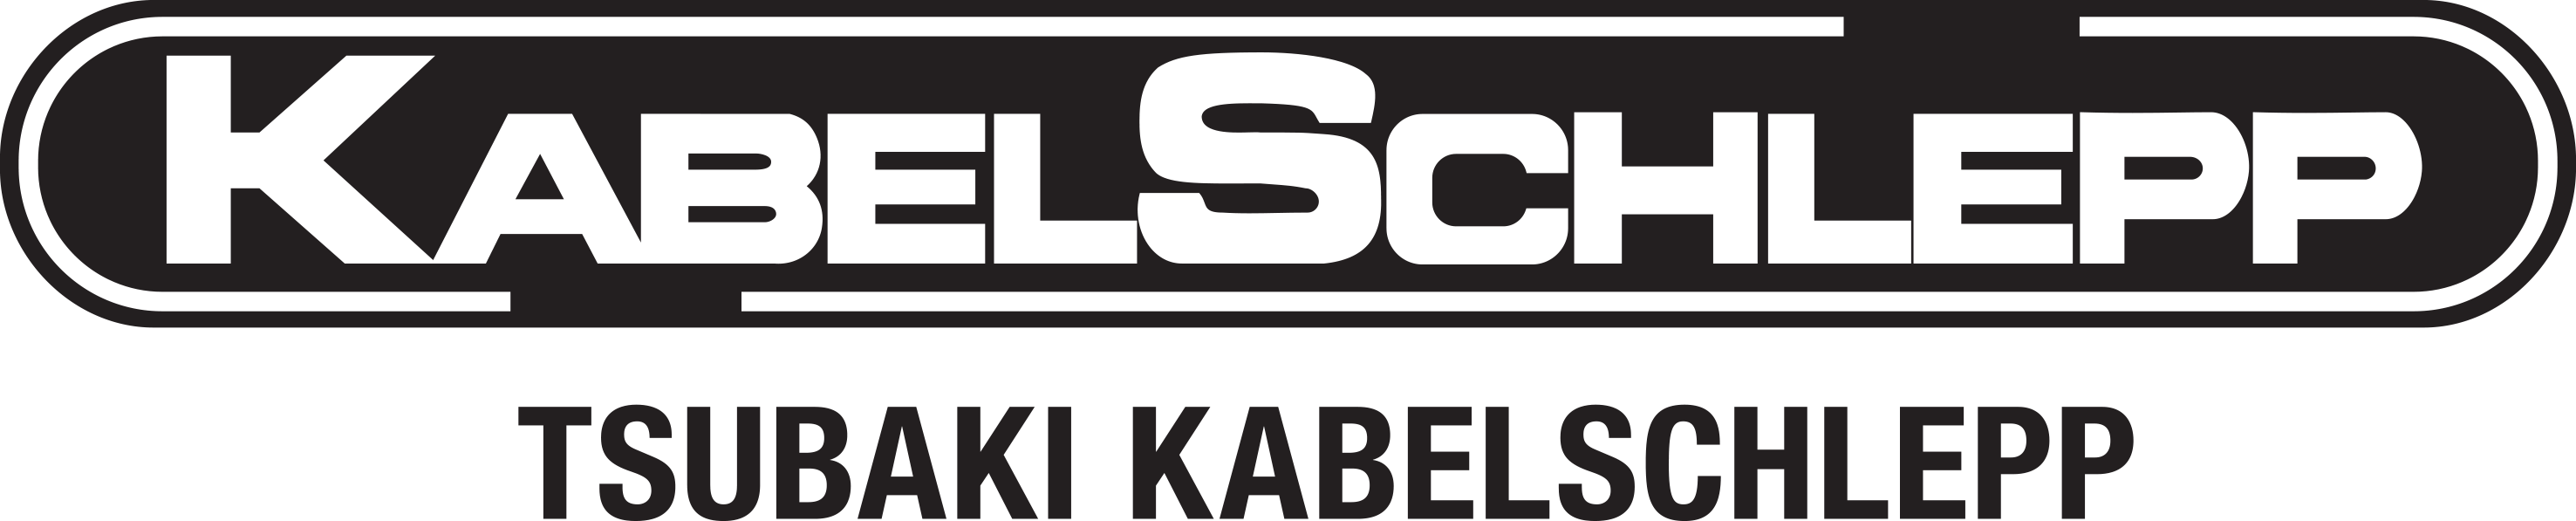 Logo_Kabelschlepp+Tsubaki_Kabelschlepp.png